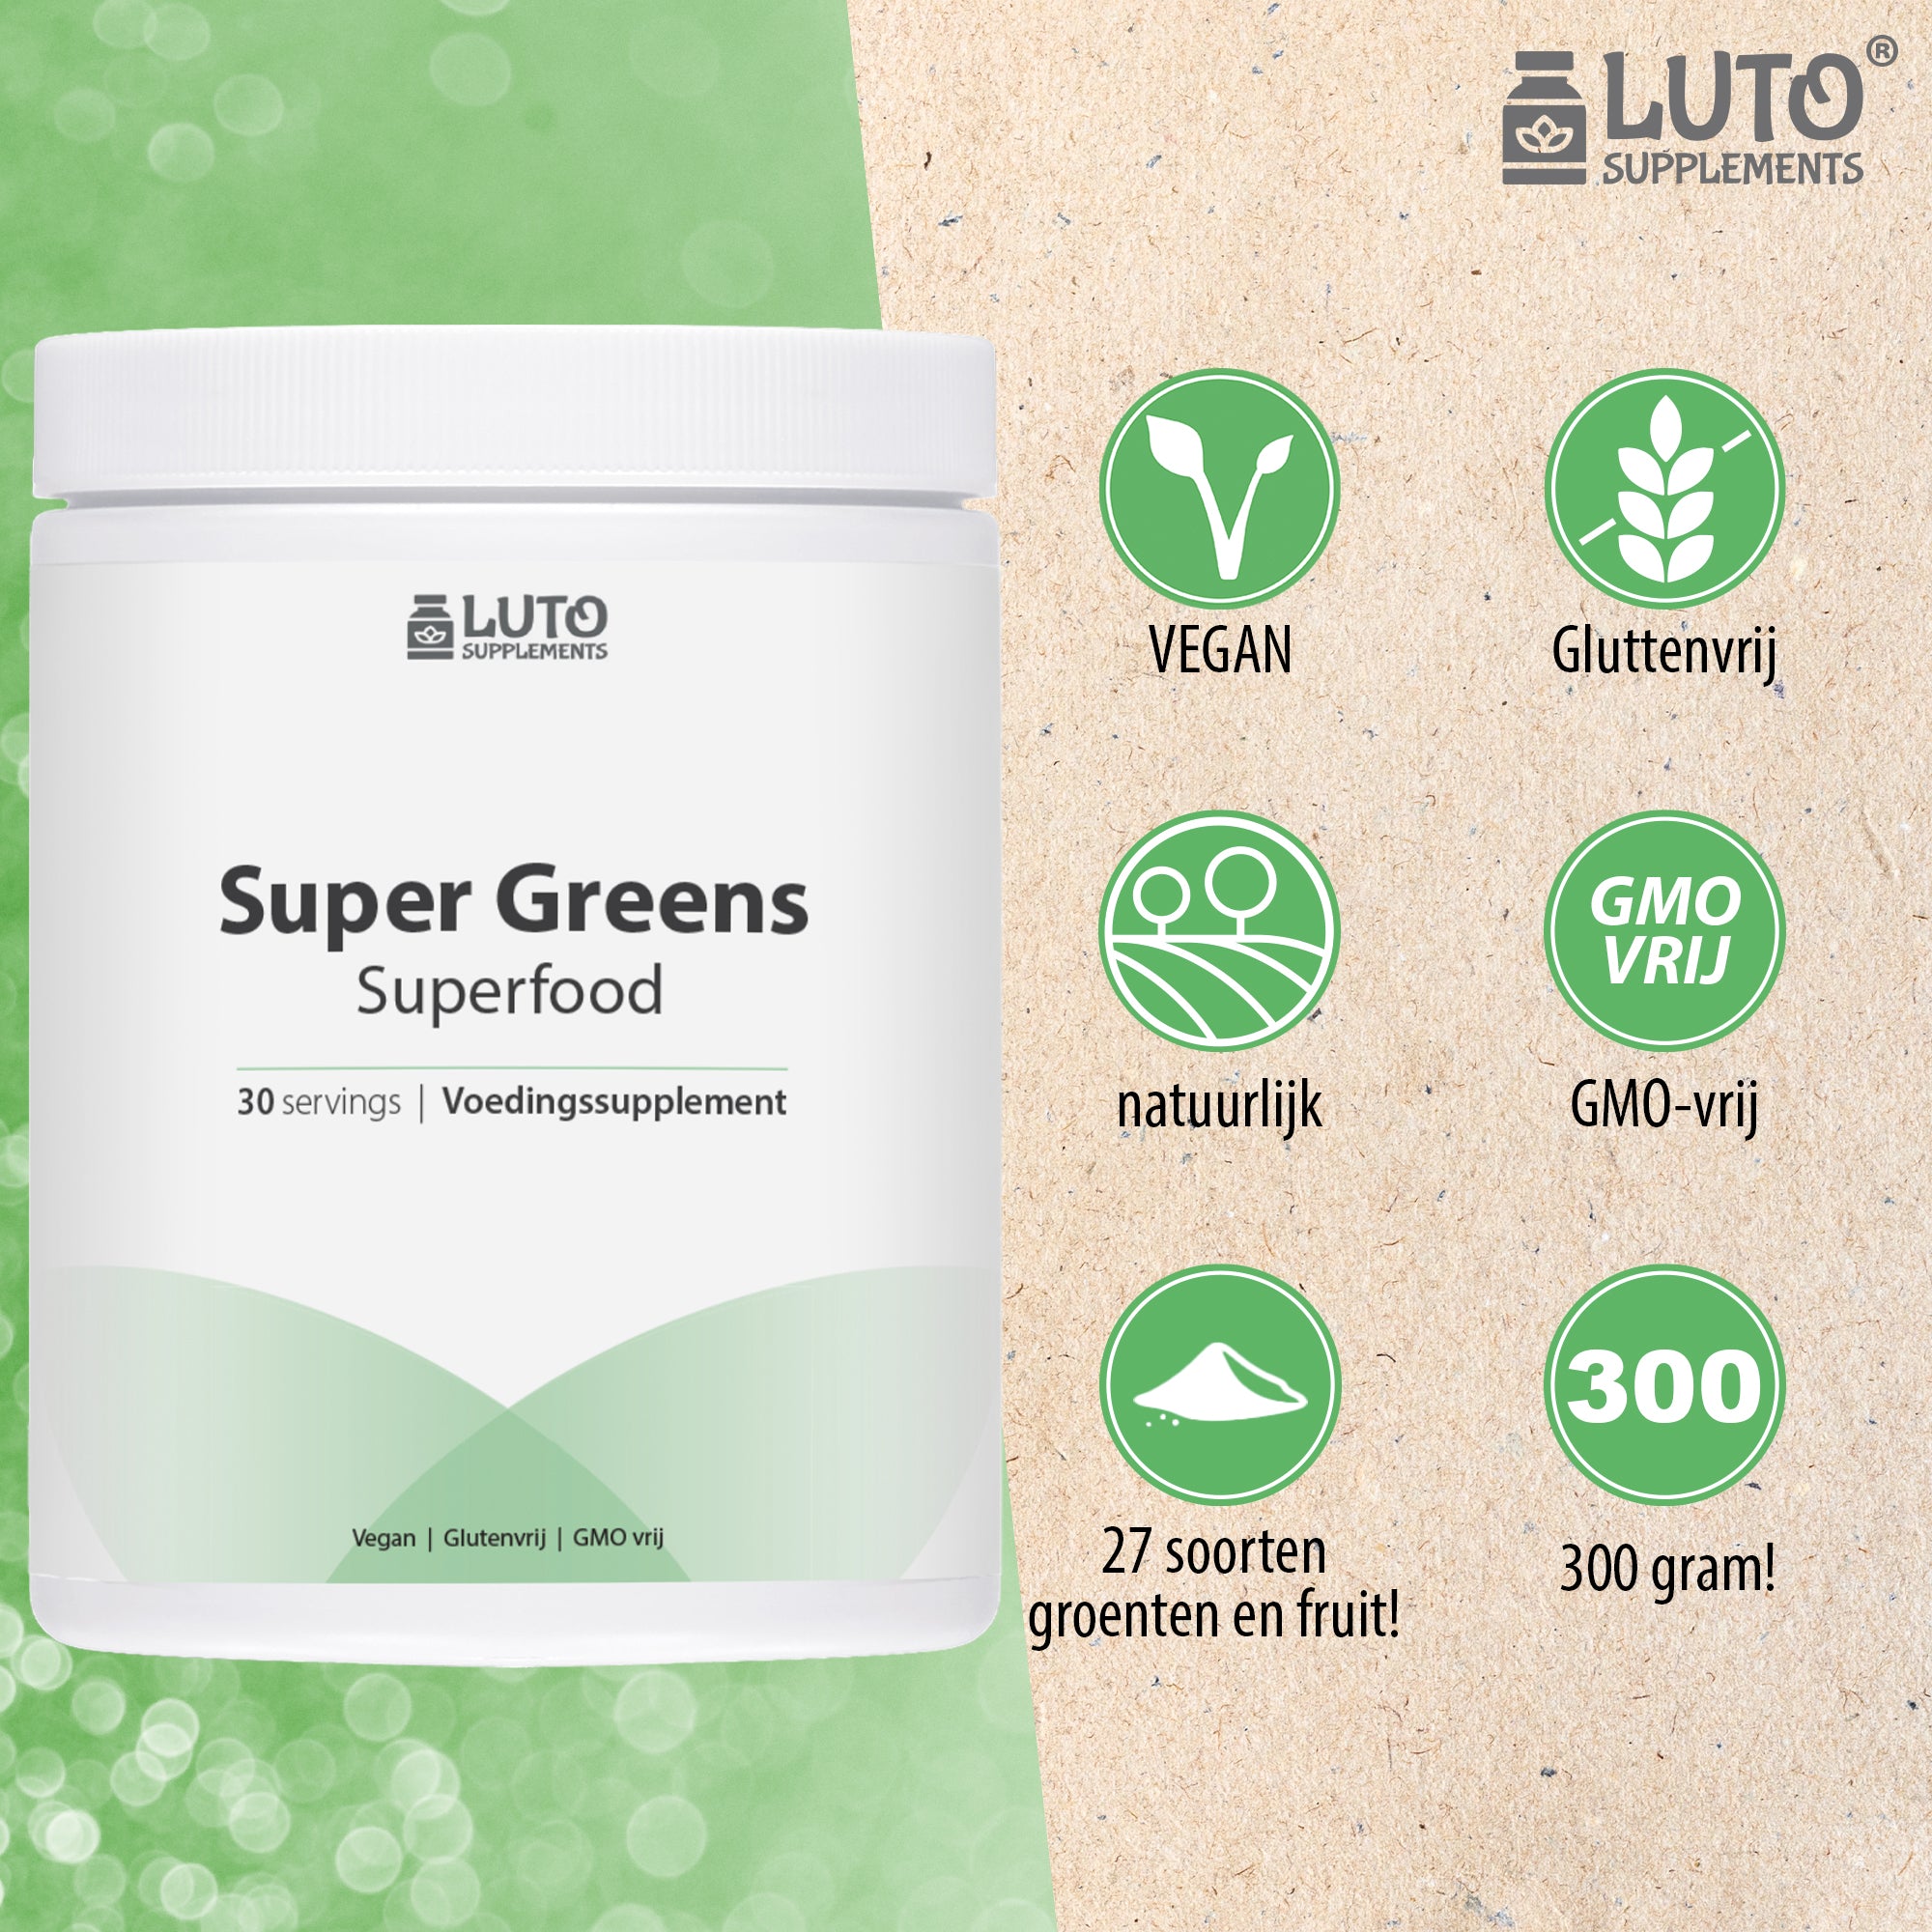 Super Greens | 300g | Superfood Mix | probiotica Lactospore | 27 soorten groenten en fruit | Vegan | GMO-vrij | Gluttenvrij | Luto Supplements